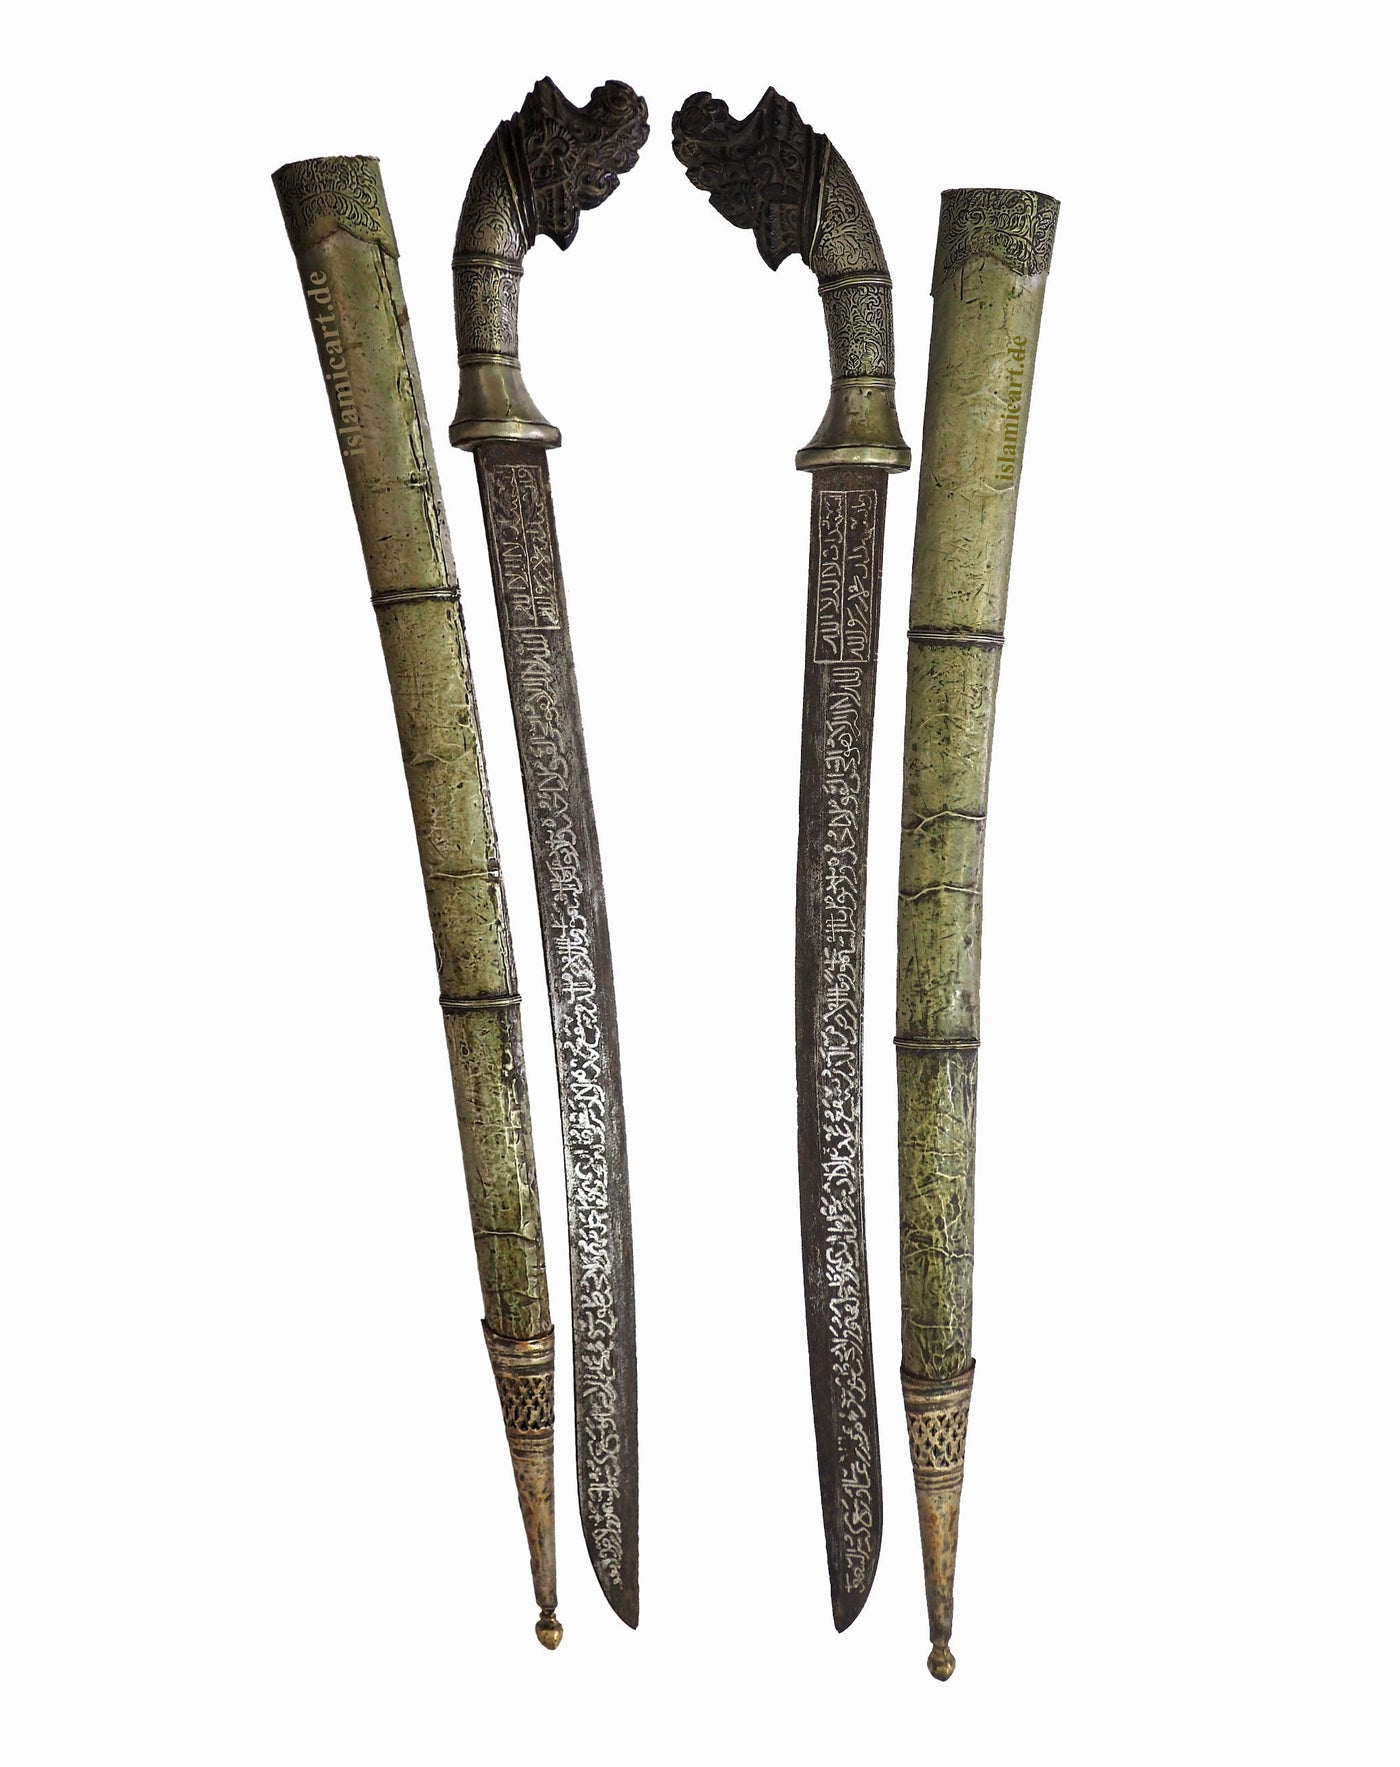 Antike islamische philippinisches Visayan pedang palembang Indonesian  Schwert  Messer shamshir aus dem 19. oder 18. Jahrhundert  Orientsbazar   